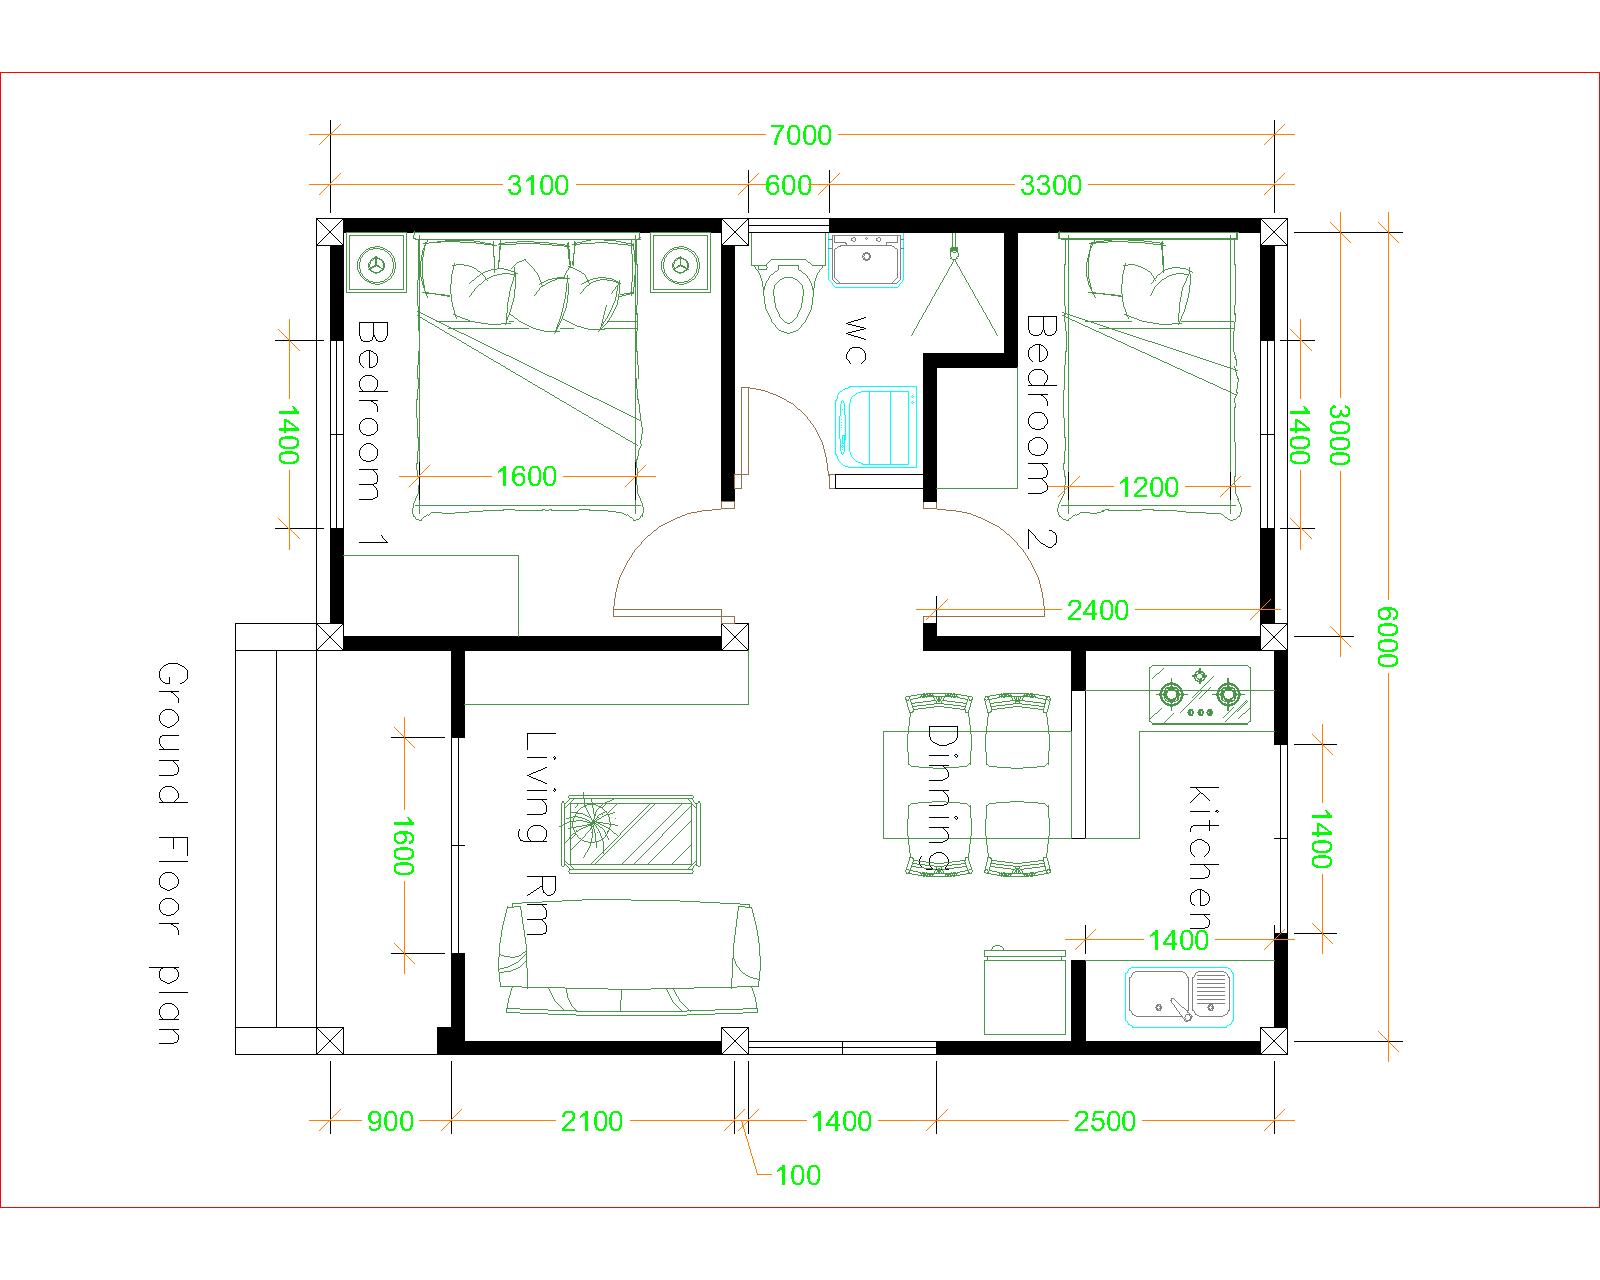 House Design 6x7 with 2 bedrooms floor plan